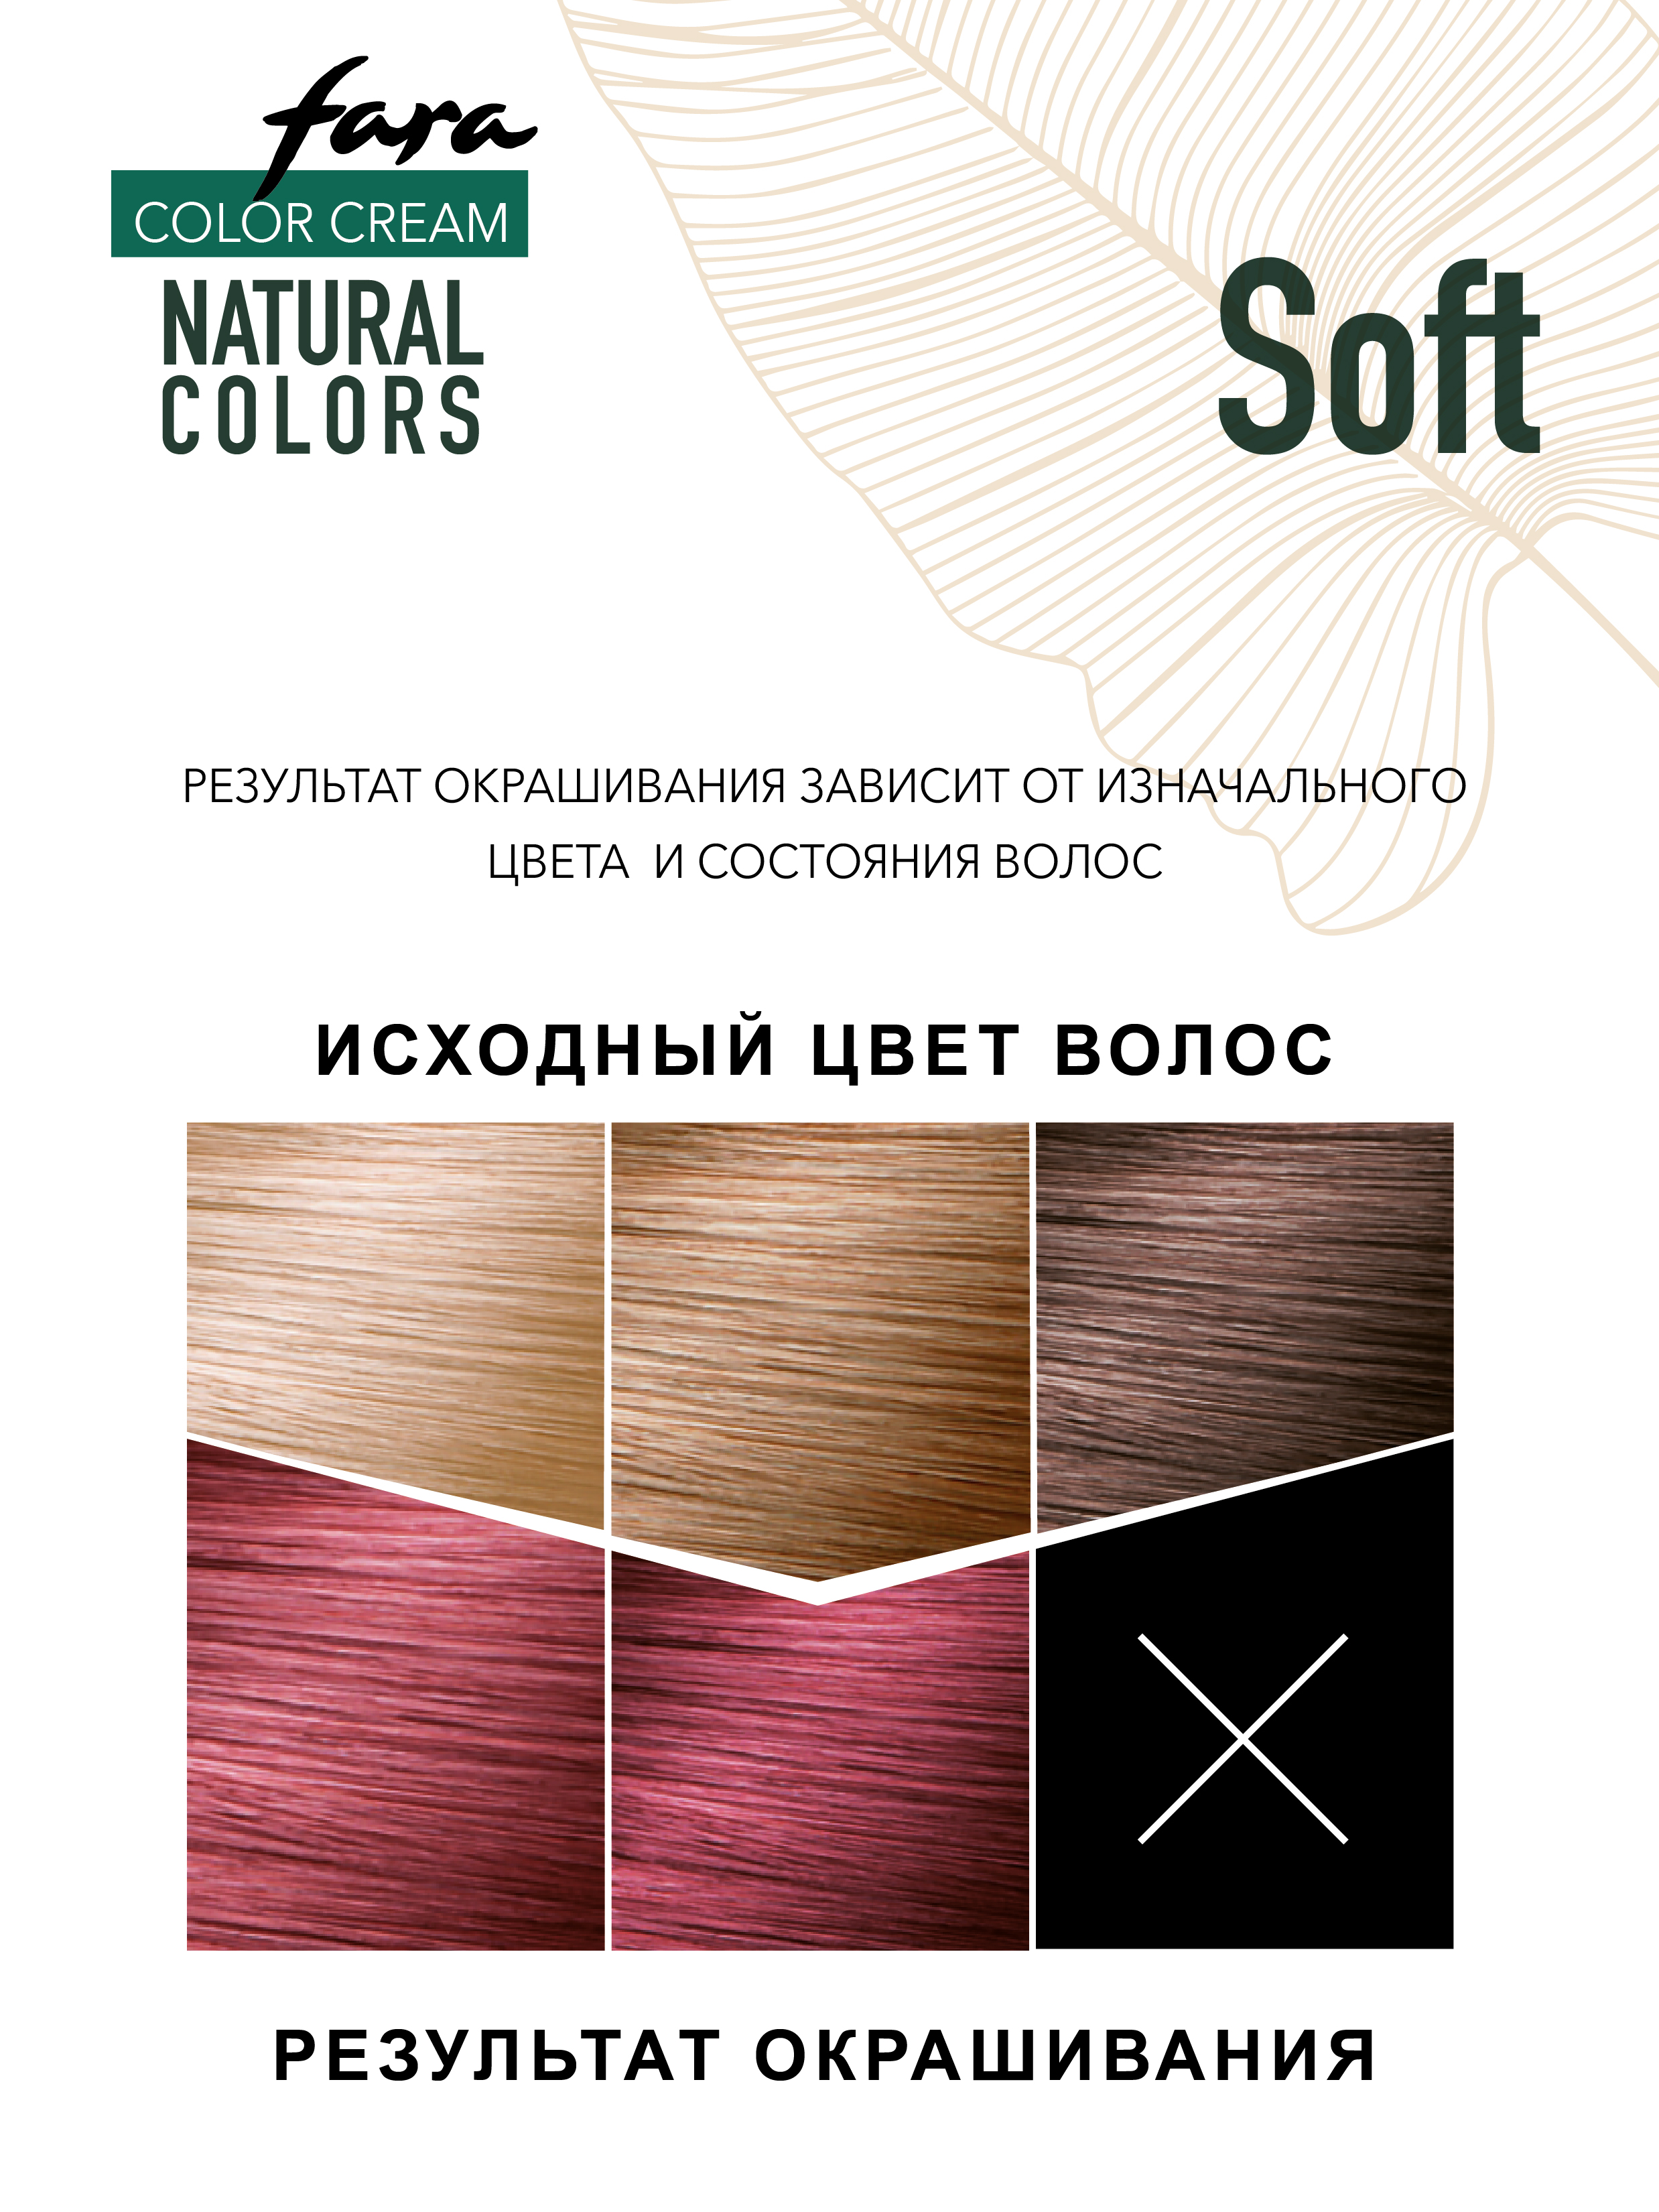 Краска для волос FARA Natural Colors Soft 328 гранат - фото 5